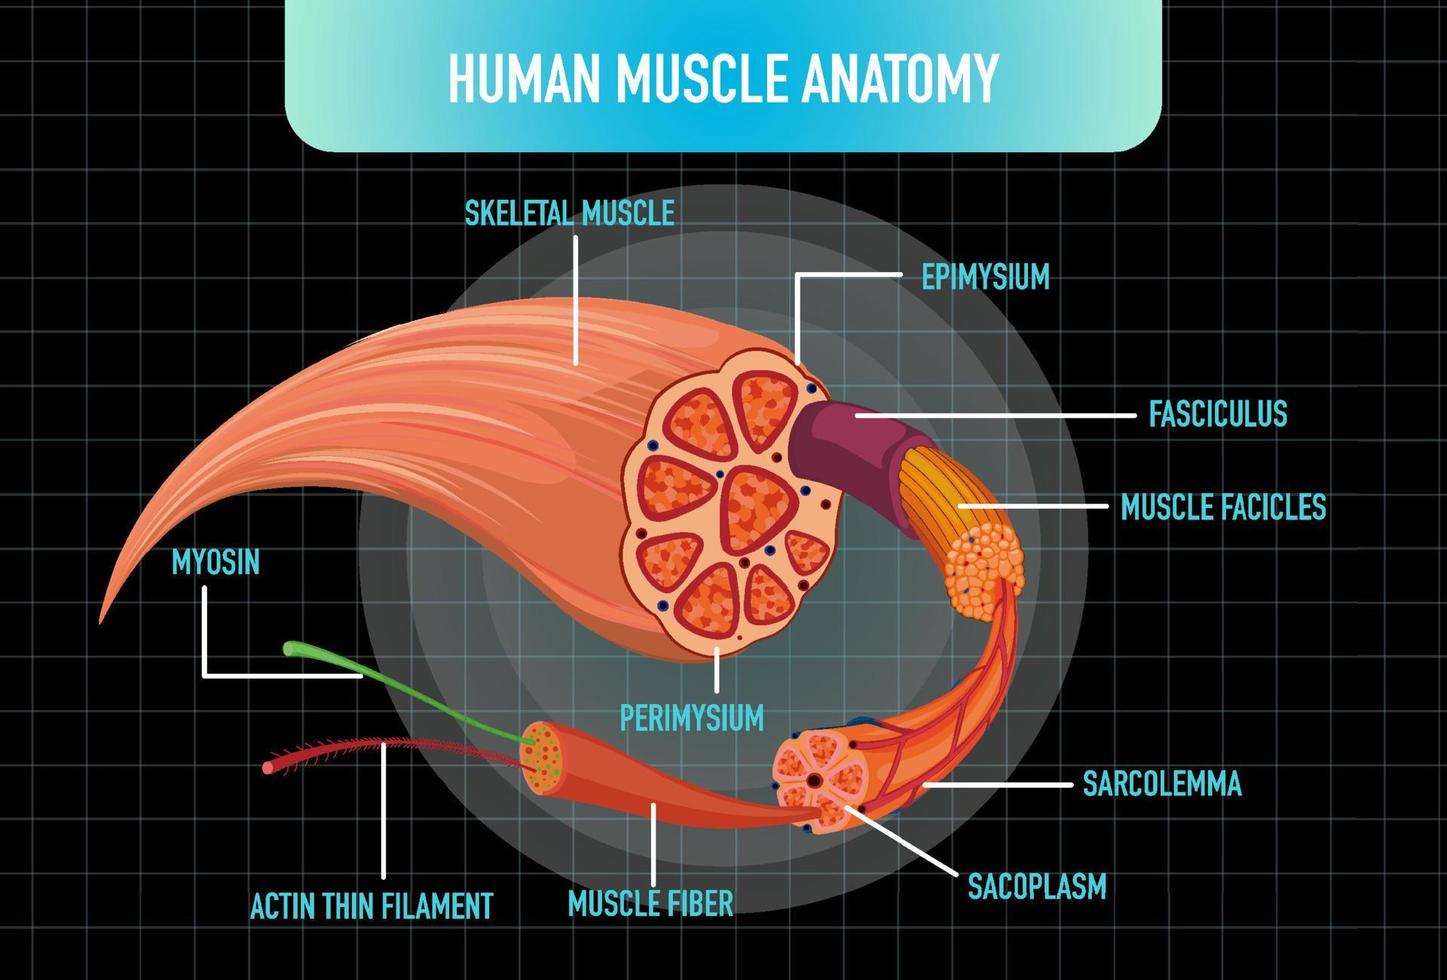 Struktur der menschlichen Muskelanatomie vektor